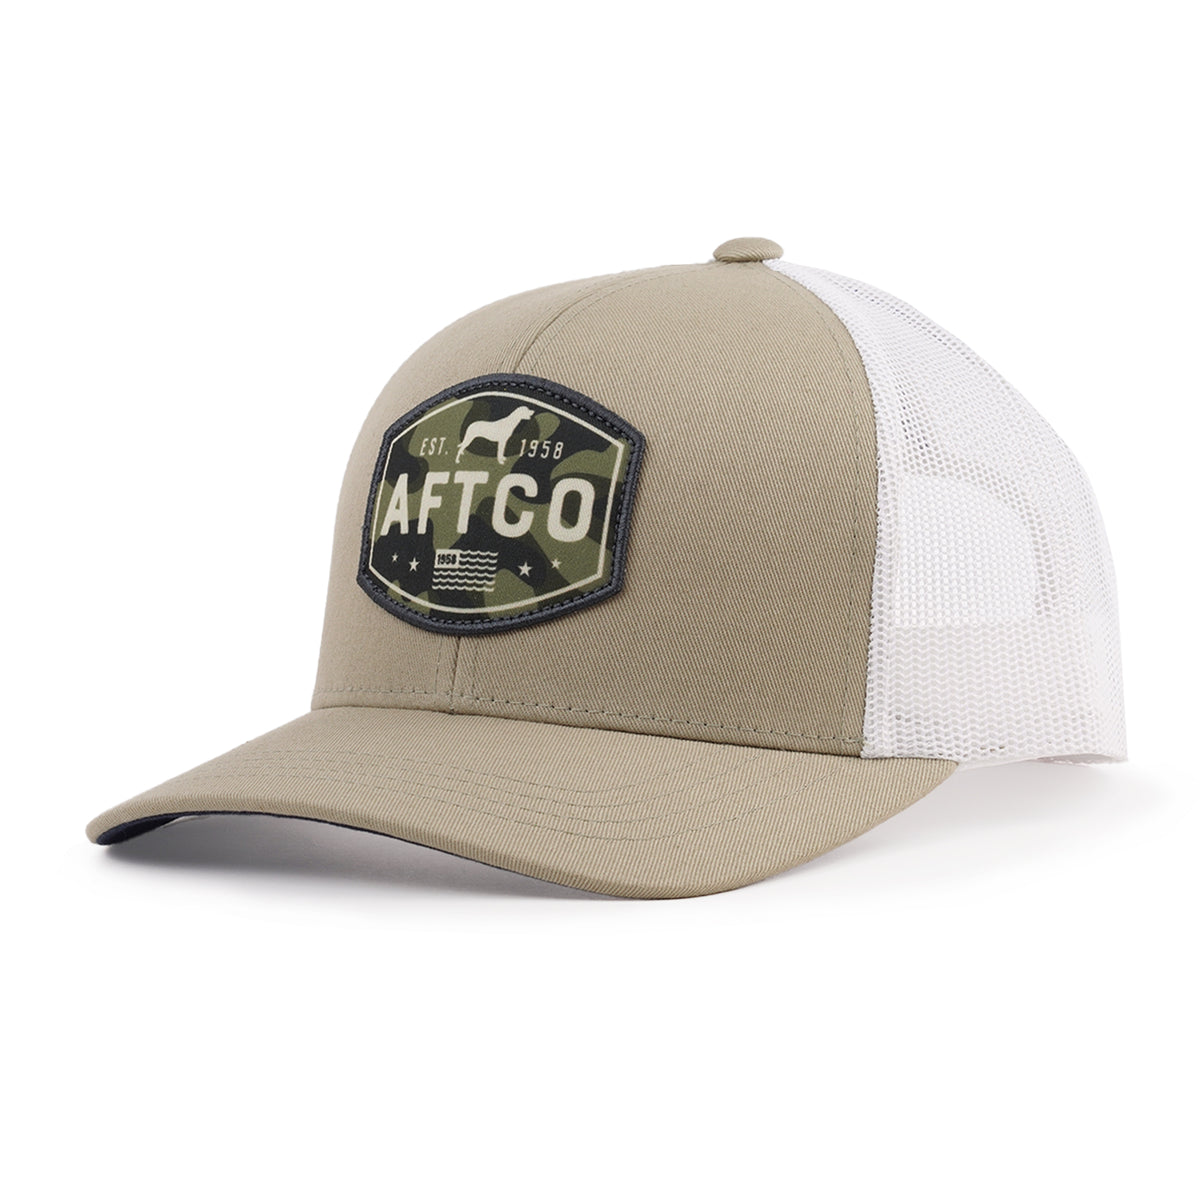 AFTCO Best Friend Trucker Hat